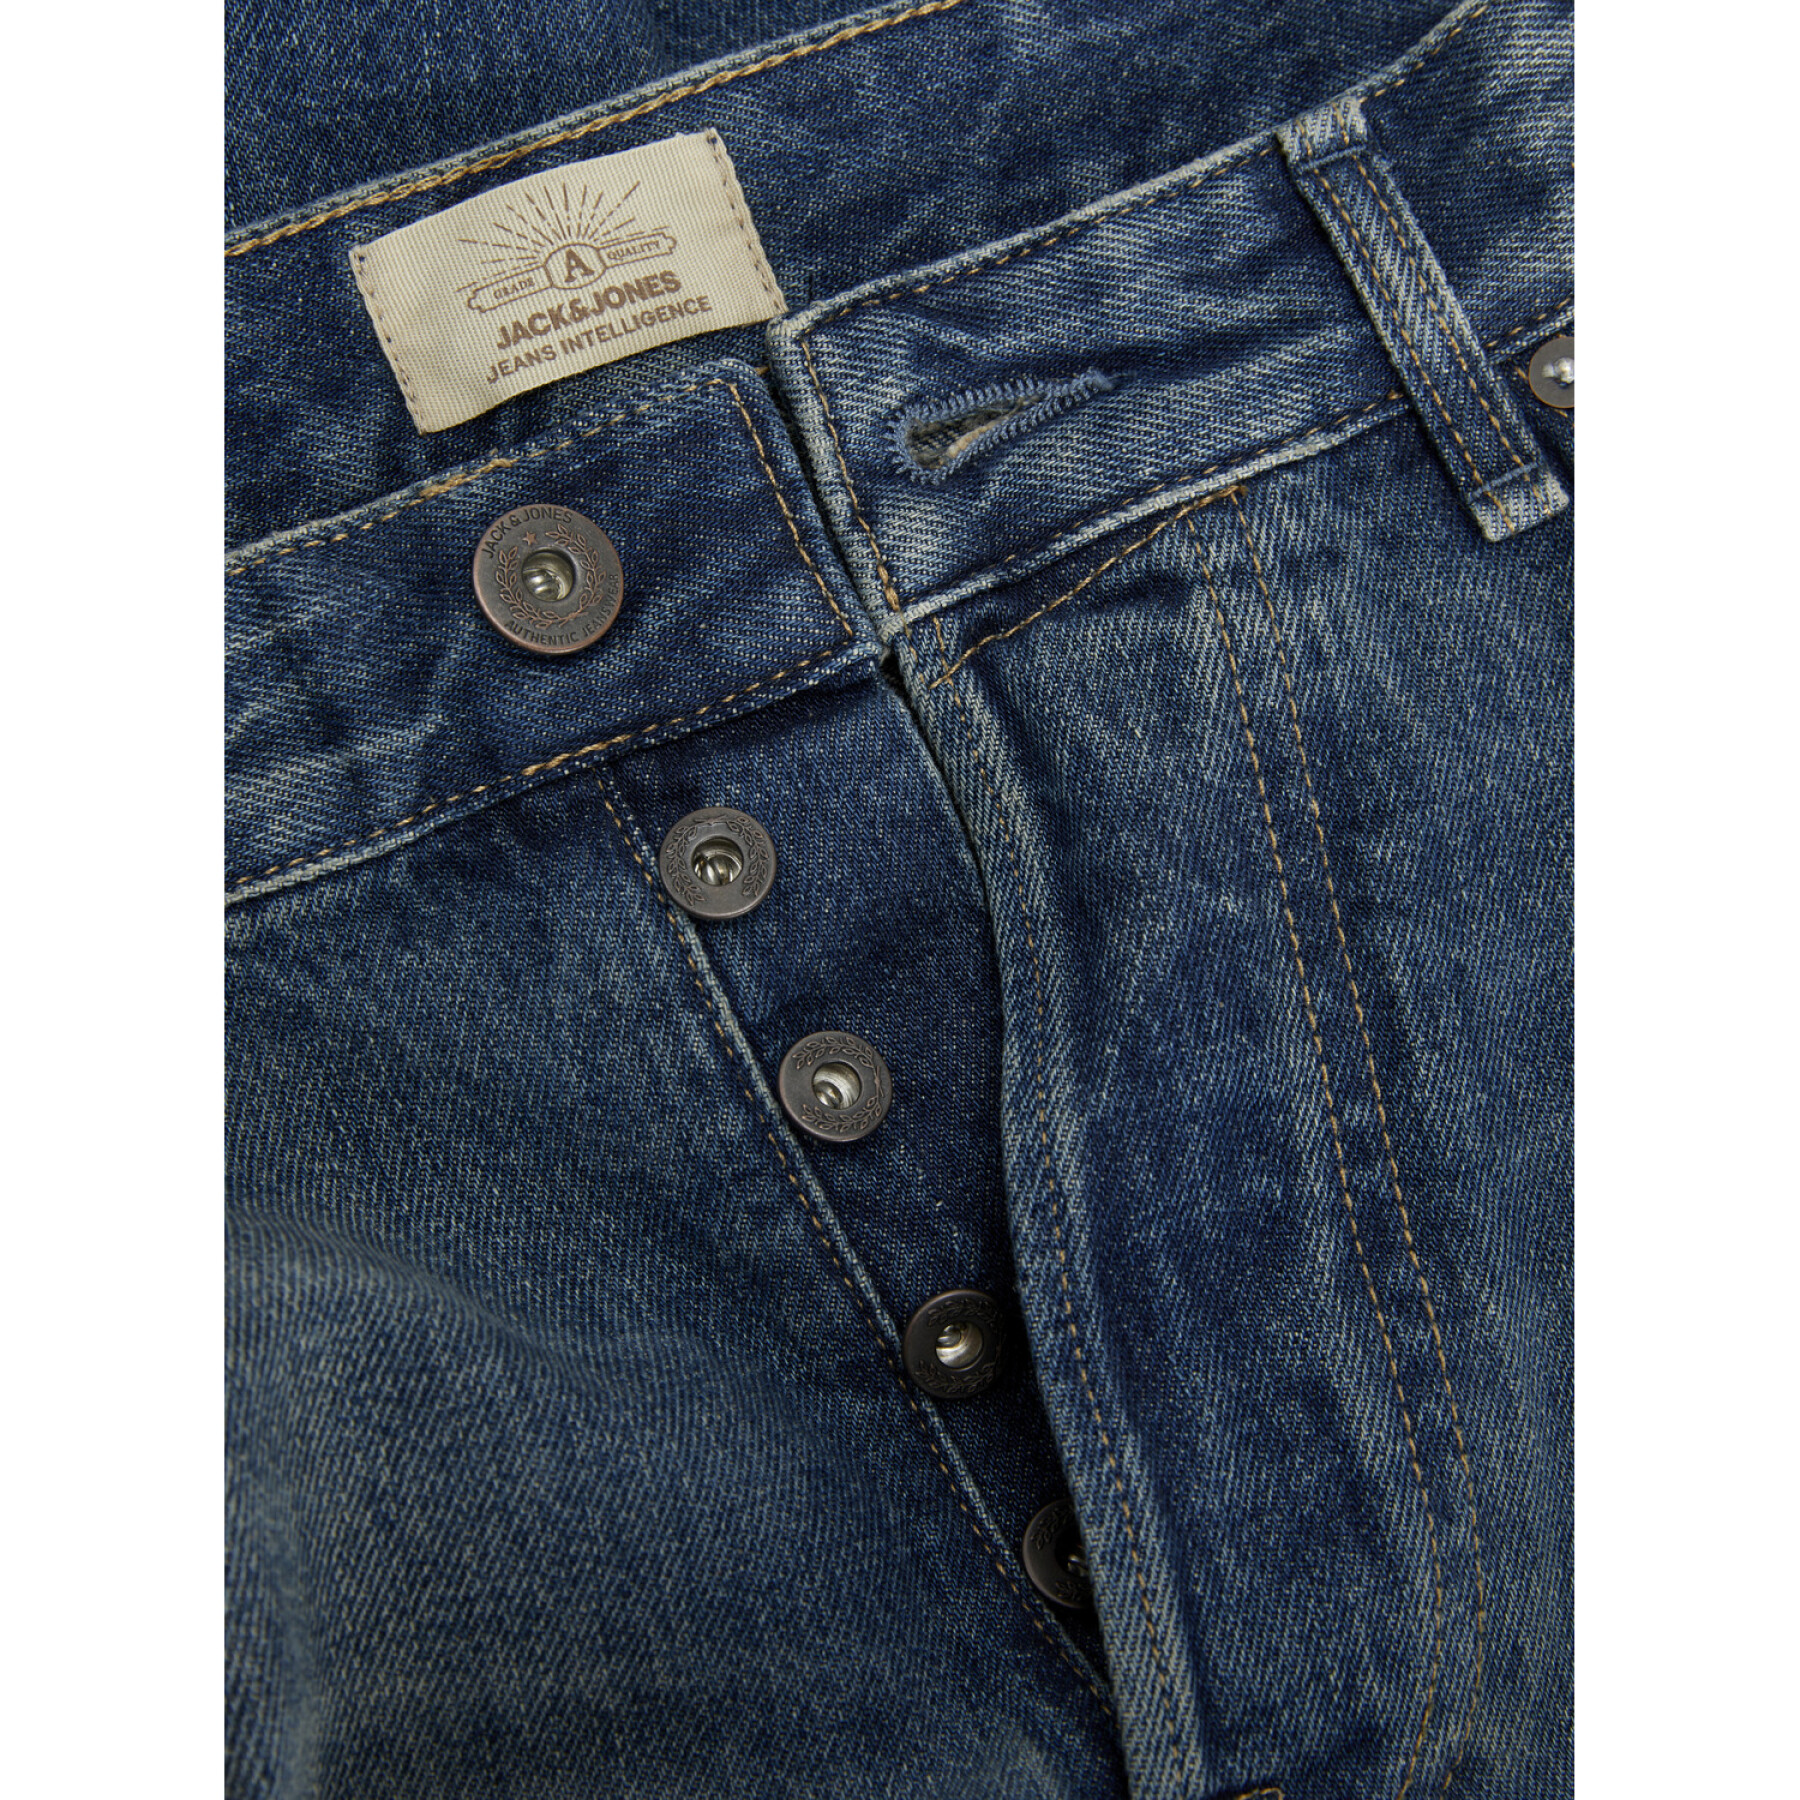 Loose-fitting jeans Jack & Jones Eddie Cooper Jos 735